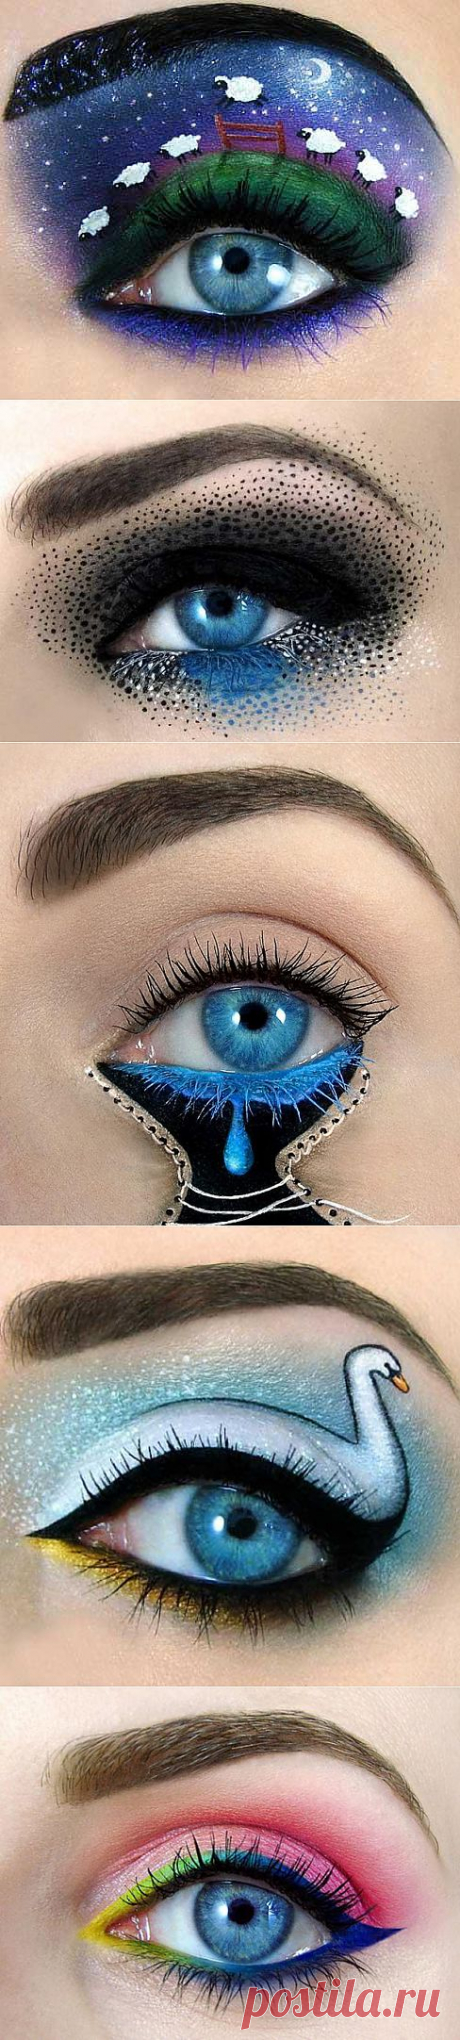 Сказочный макияж глаз от Тал Пилега - Ярмарка Мастеров - ручная работа, handmade